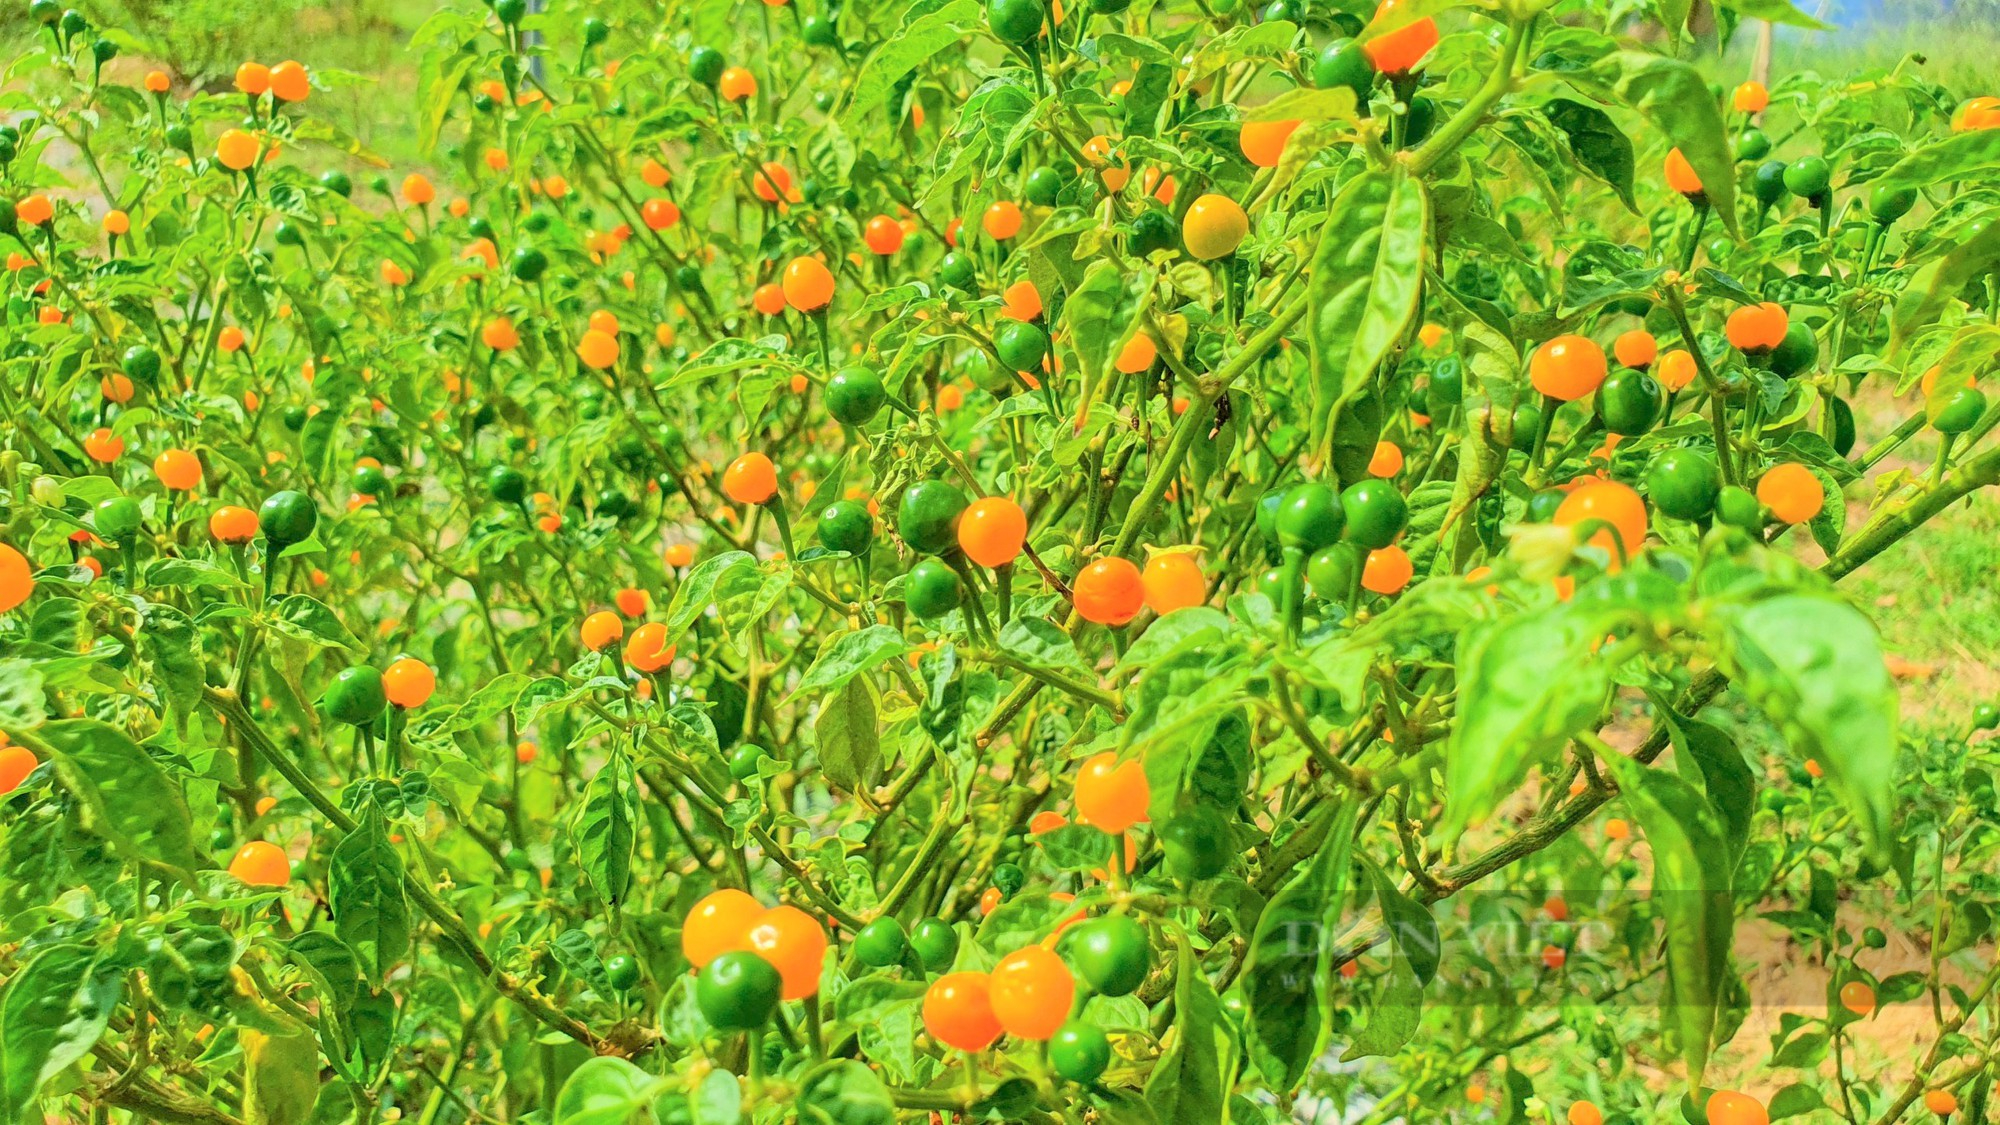 Nông dân Hà Tĩnh trồng giống ớt quả bé tí tẹo, giá bán lại đắt nhất thế giới, mỗi năm lãi hàng trăm triệu - Ảnh 6.